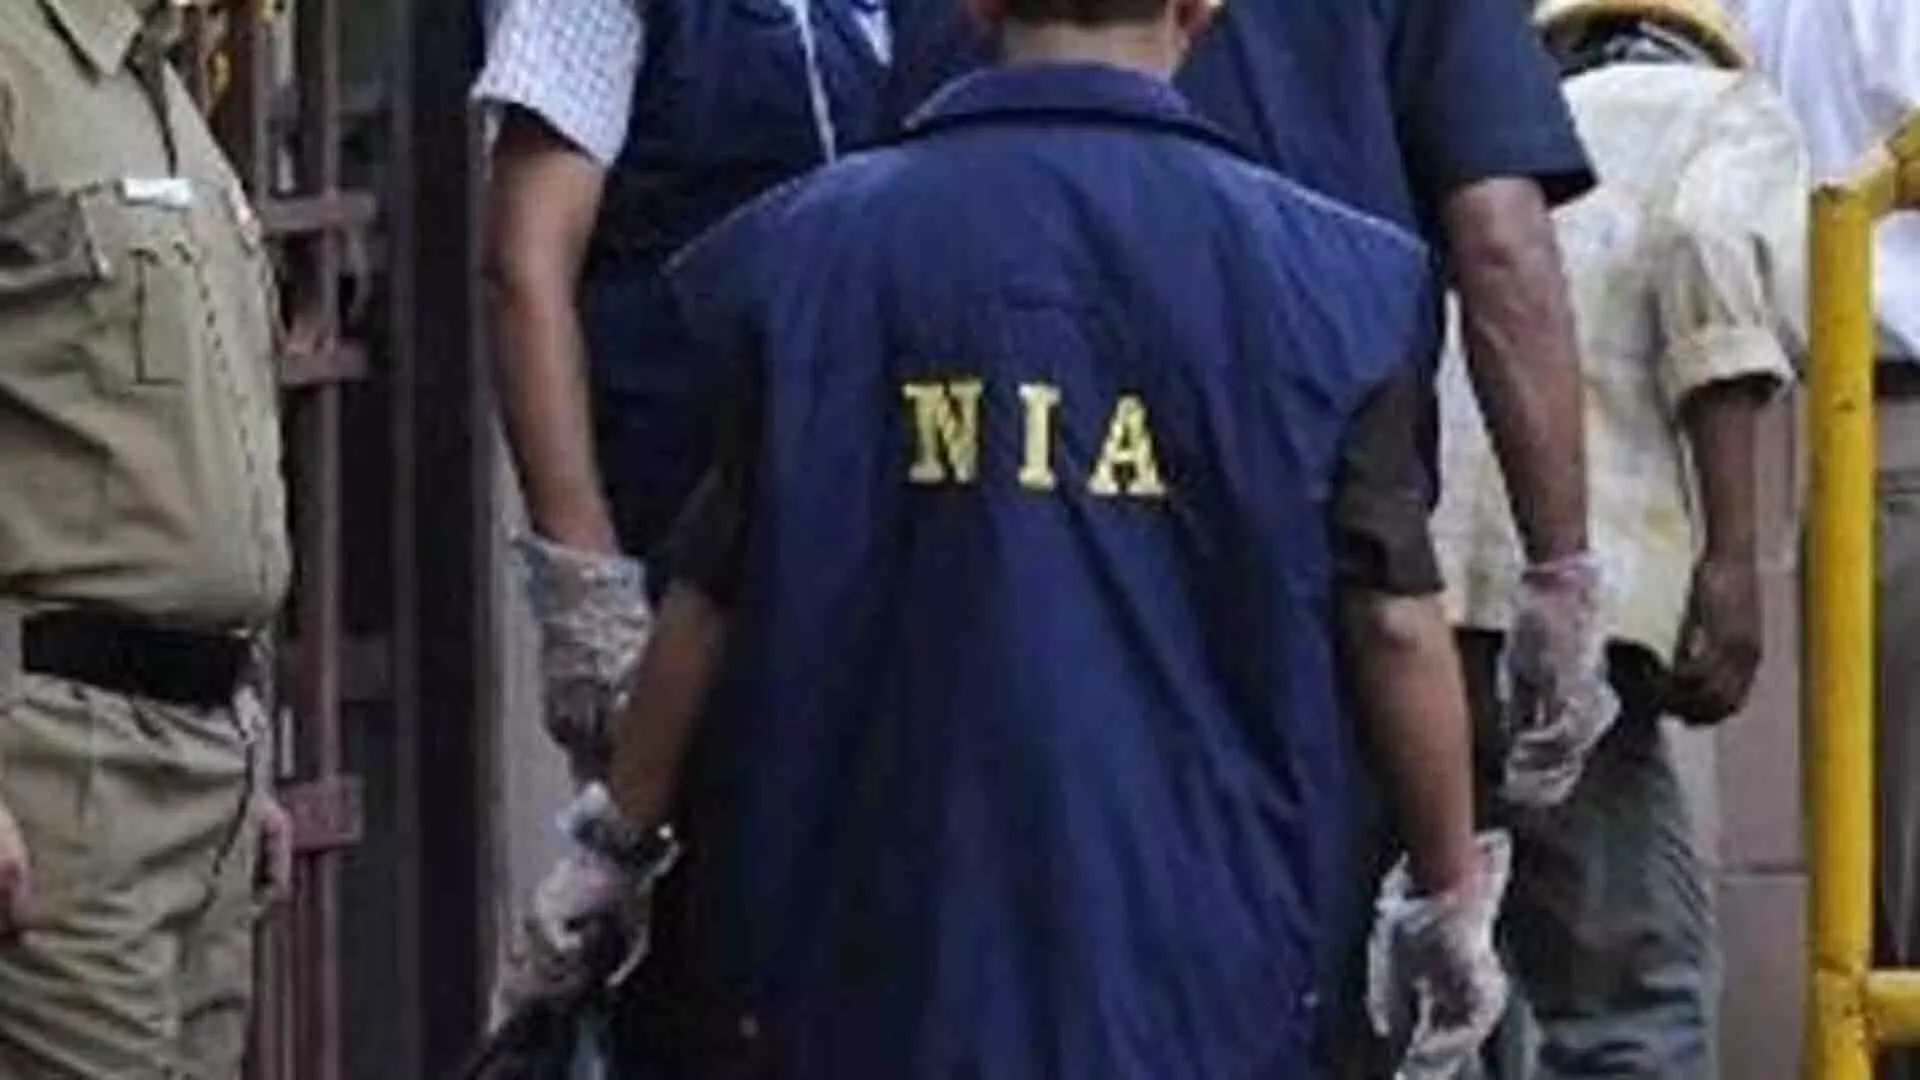 विस्फोट मामले की जांच के दौरान संदेशखाली प्रदर्शनकारियों ने NIA अधिकारियों पर पथराव